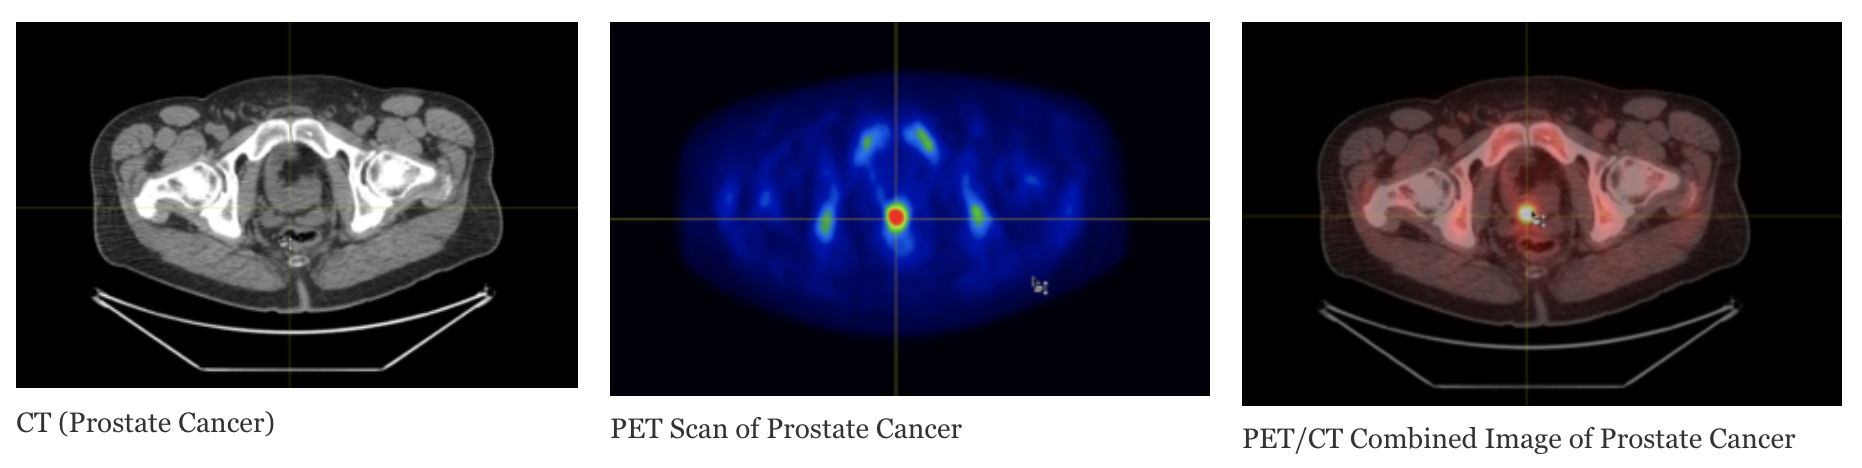 PET Scanning For Prostate Cancer